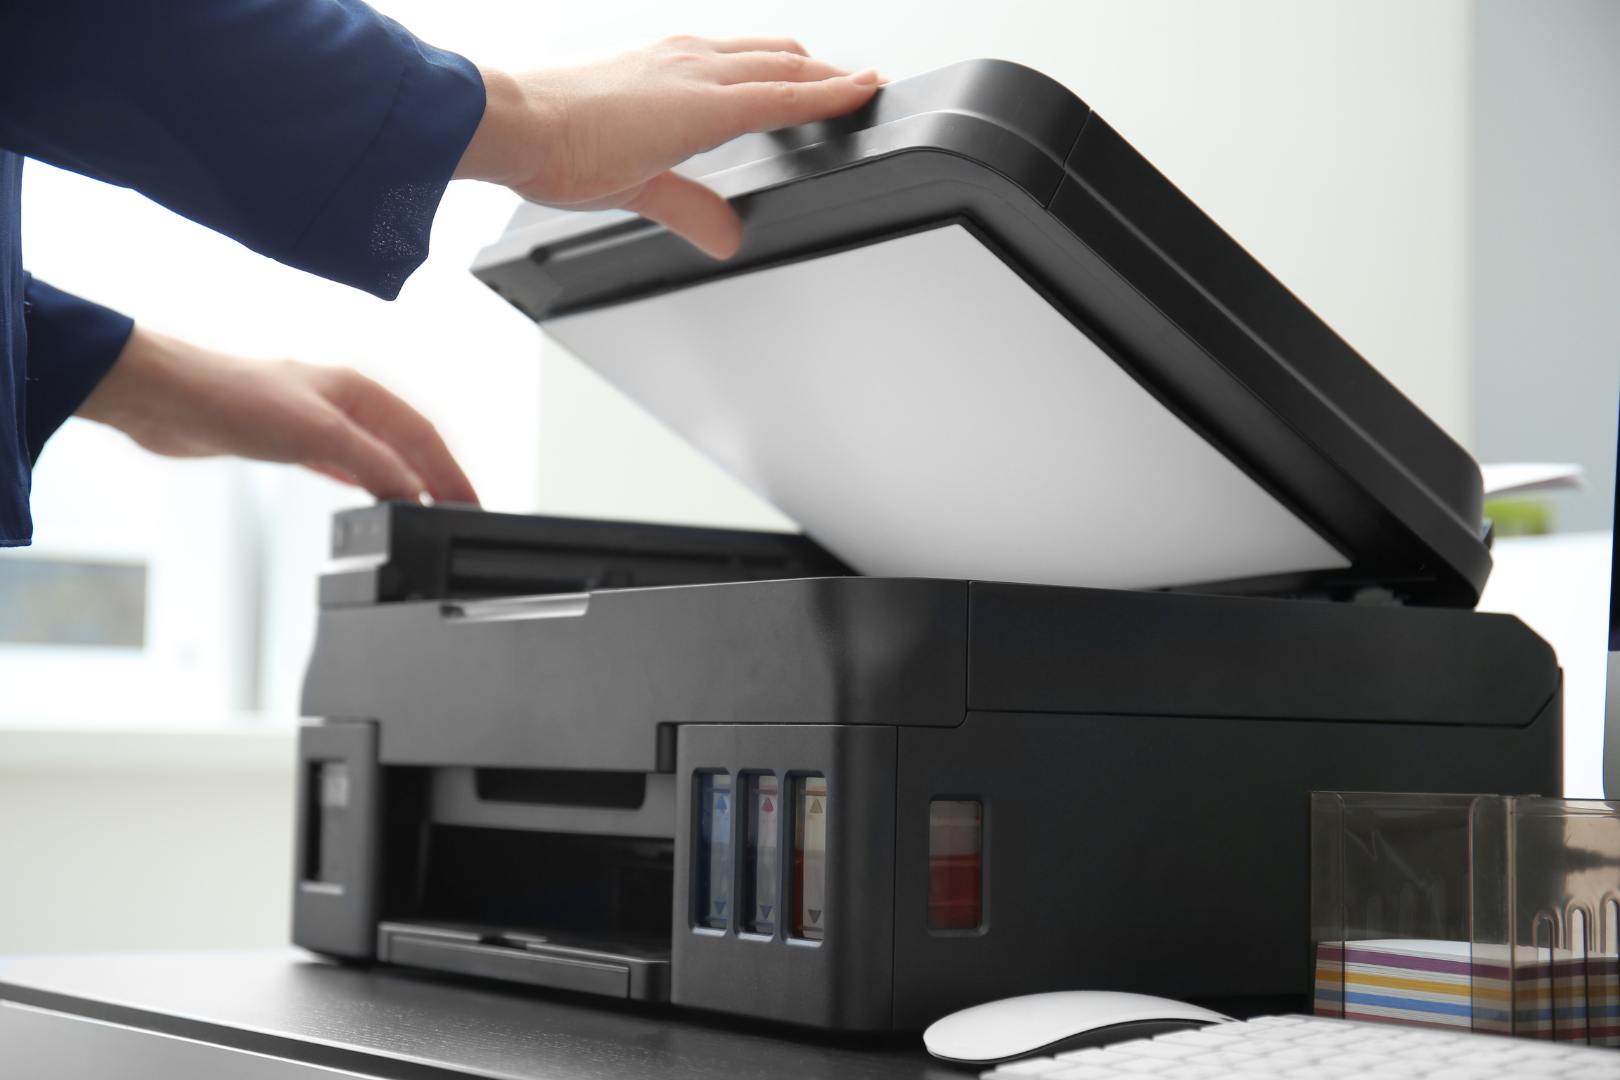 Melhores Impressoras Epson Personalizados: 5 Ótimas Opções